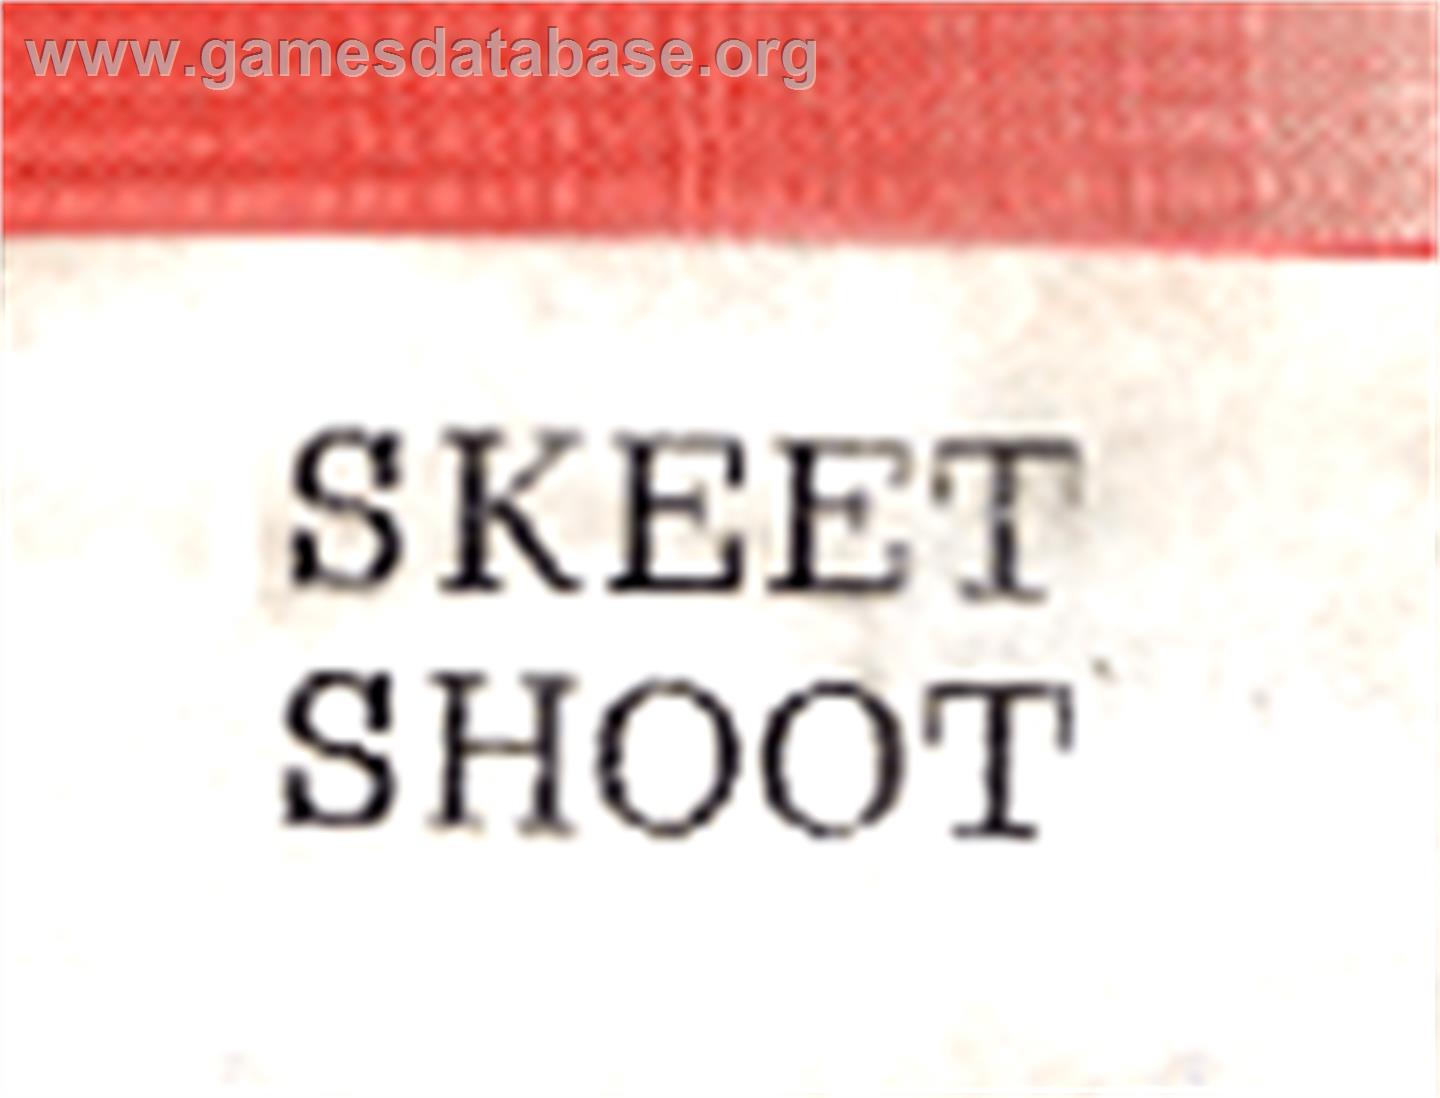 Skeet Shoot - Amstrad GX4000 - Artwork - Cartridge Top